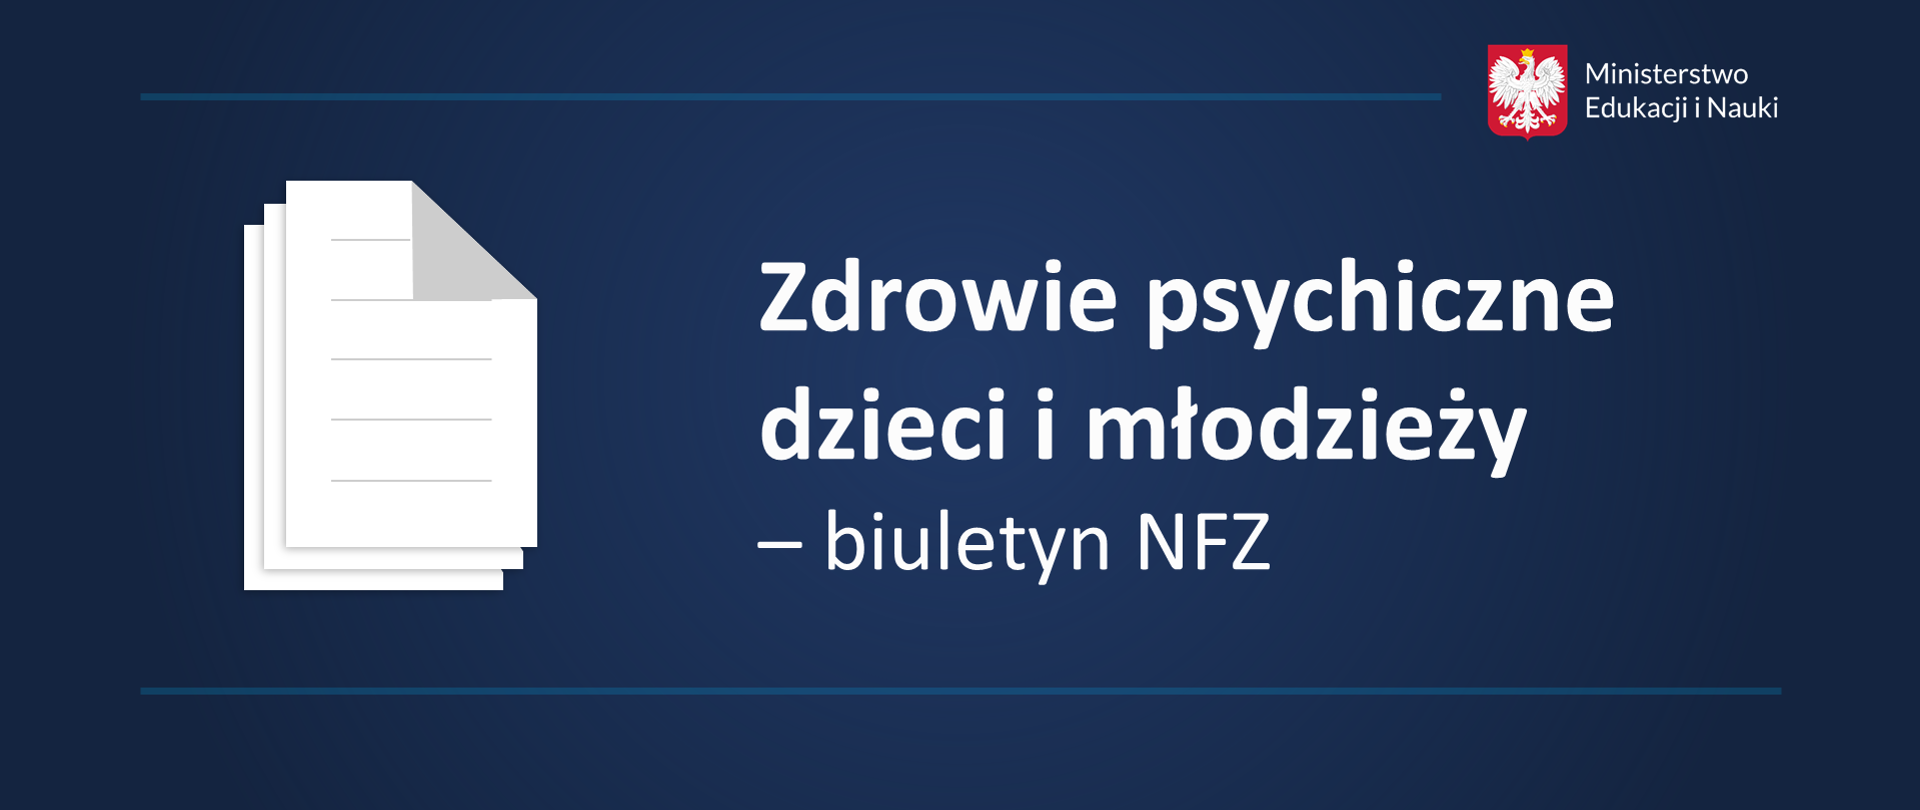 Zdrowie psychiczne dzieci i młodzieży – biuletyn NFZ.